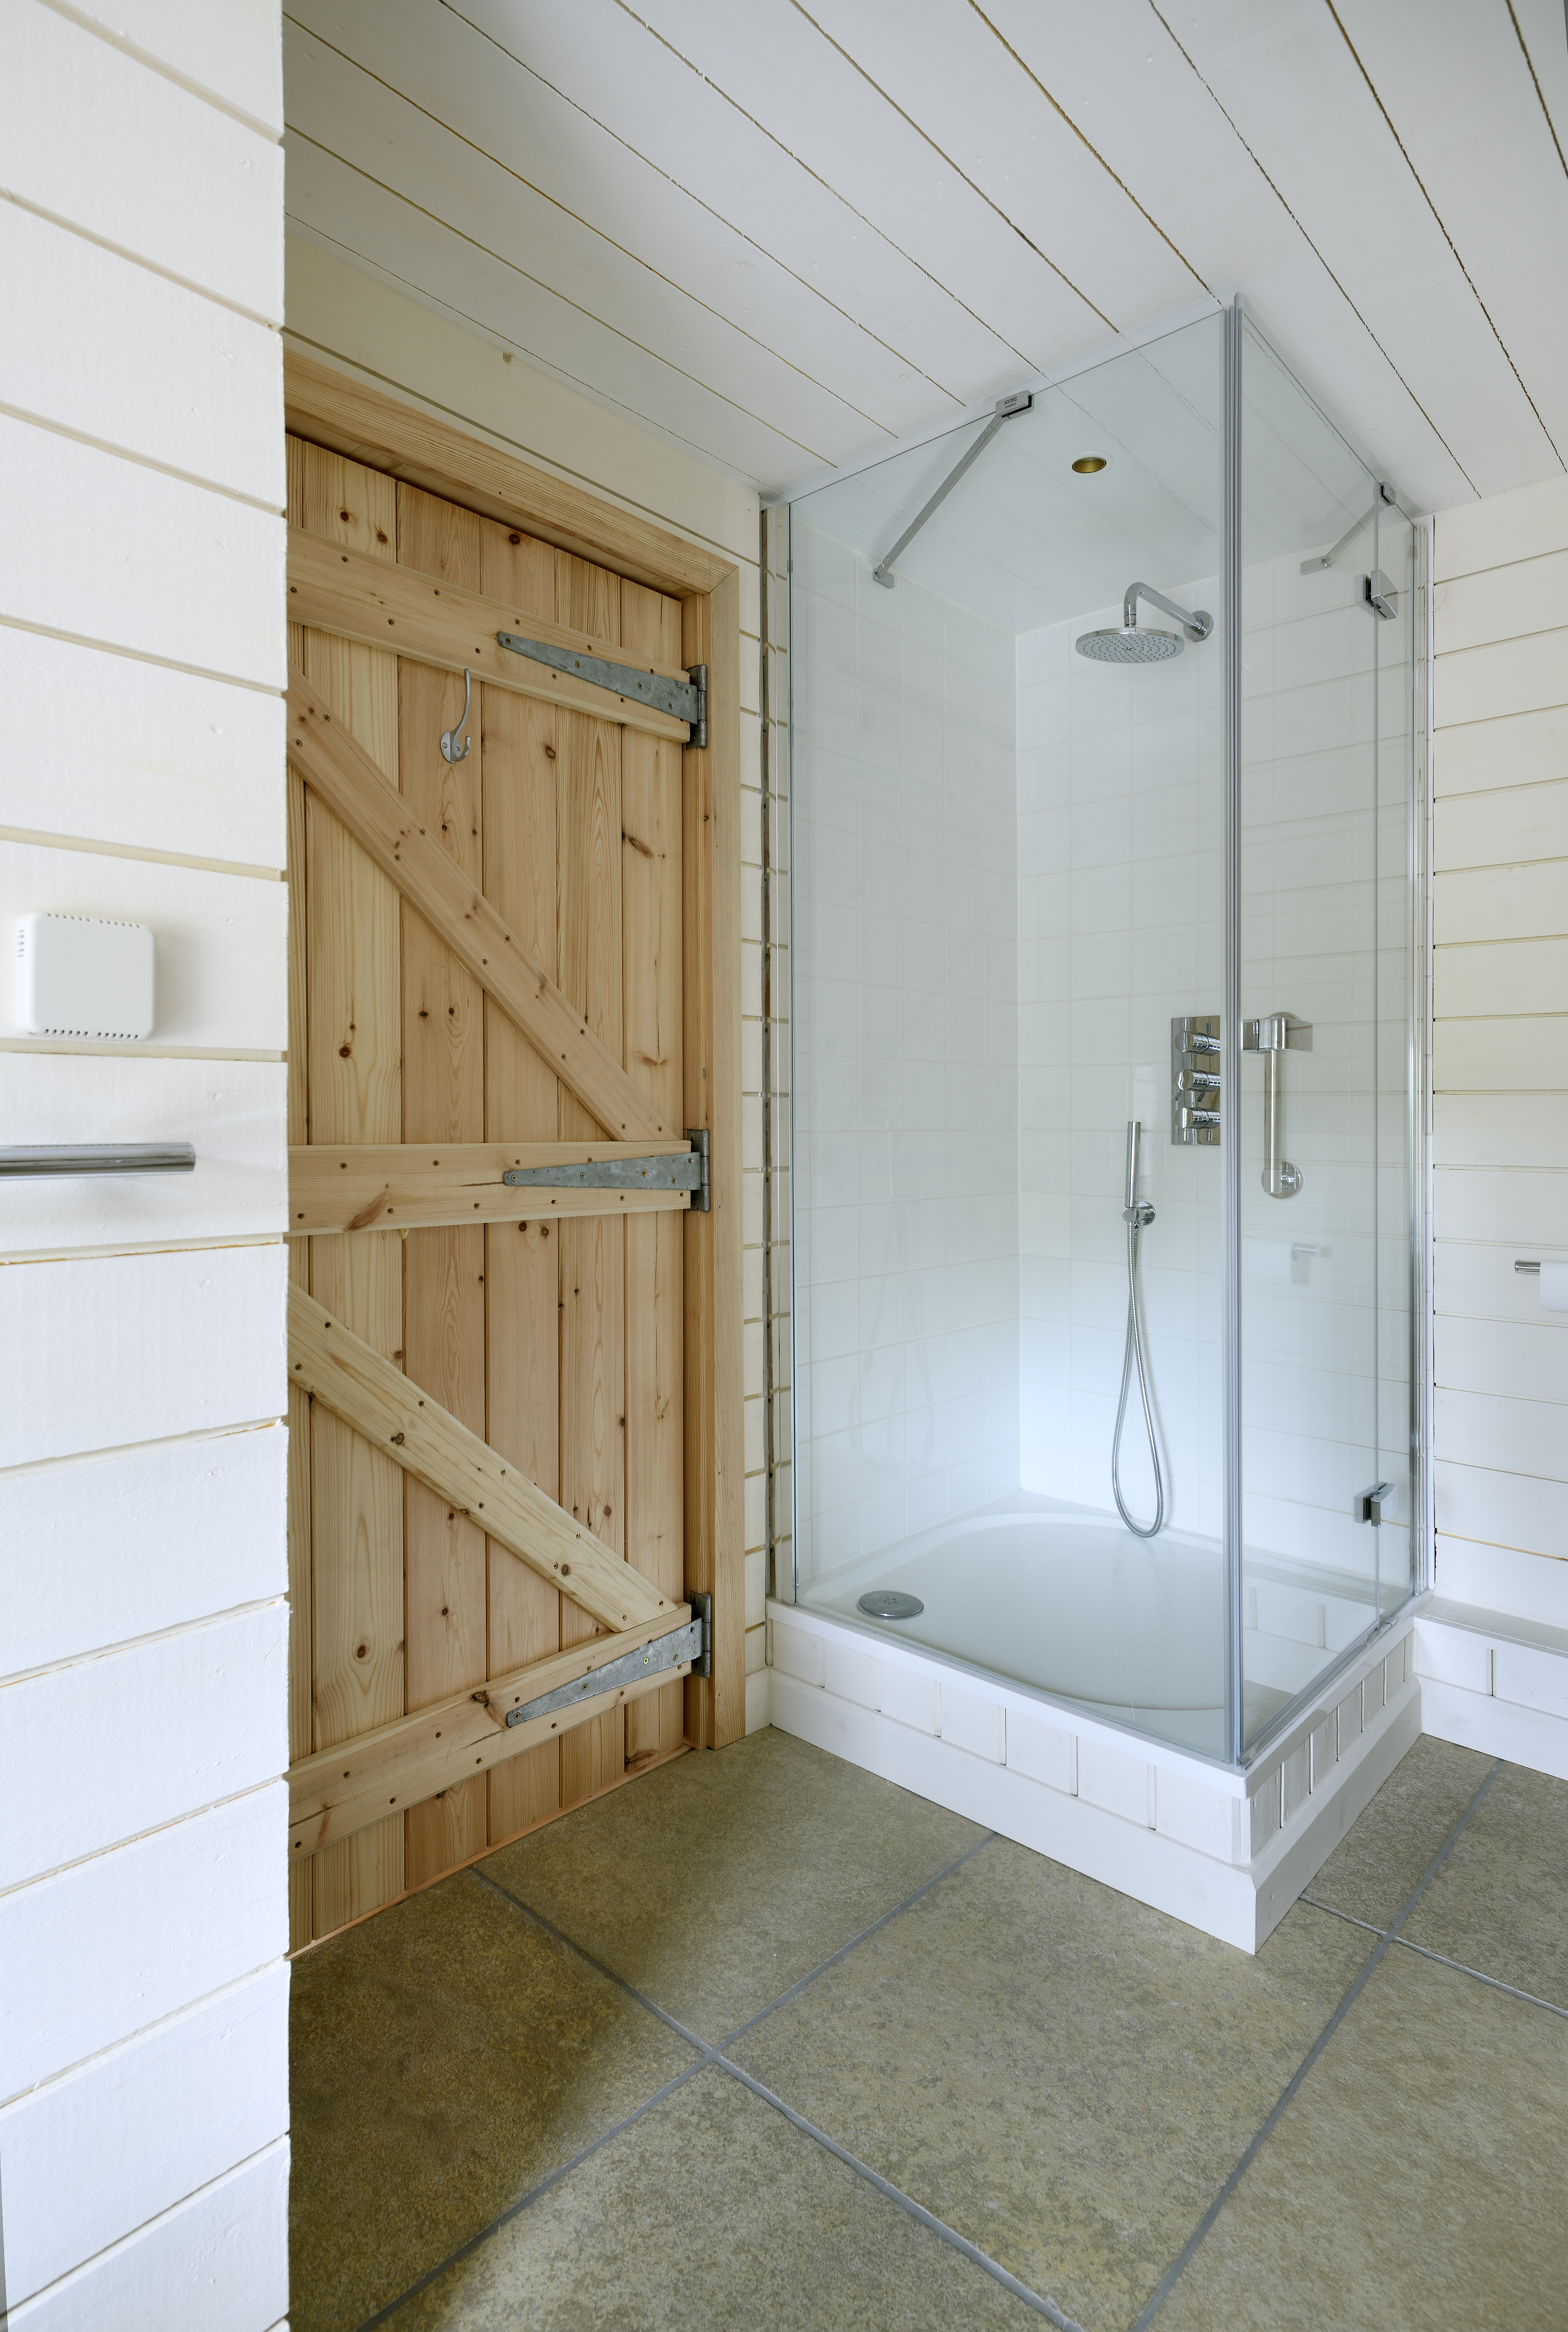 Shower room with wooden door